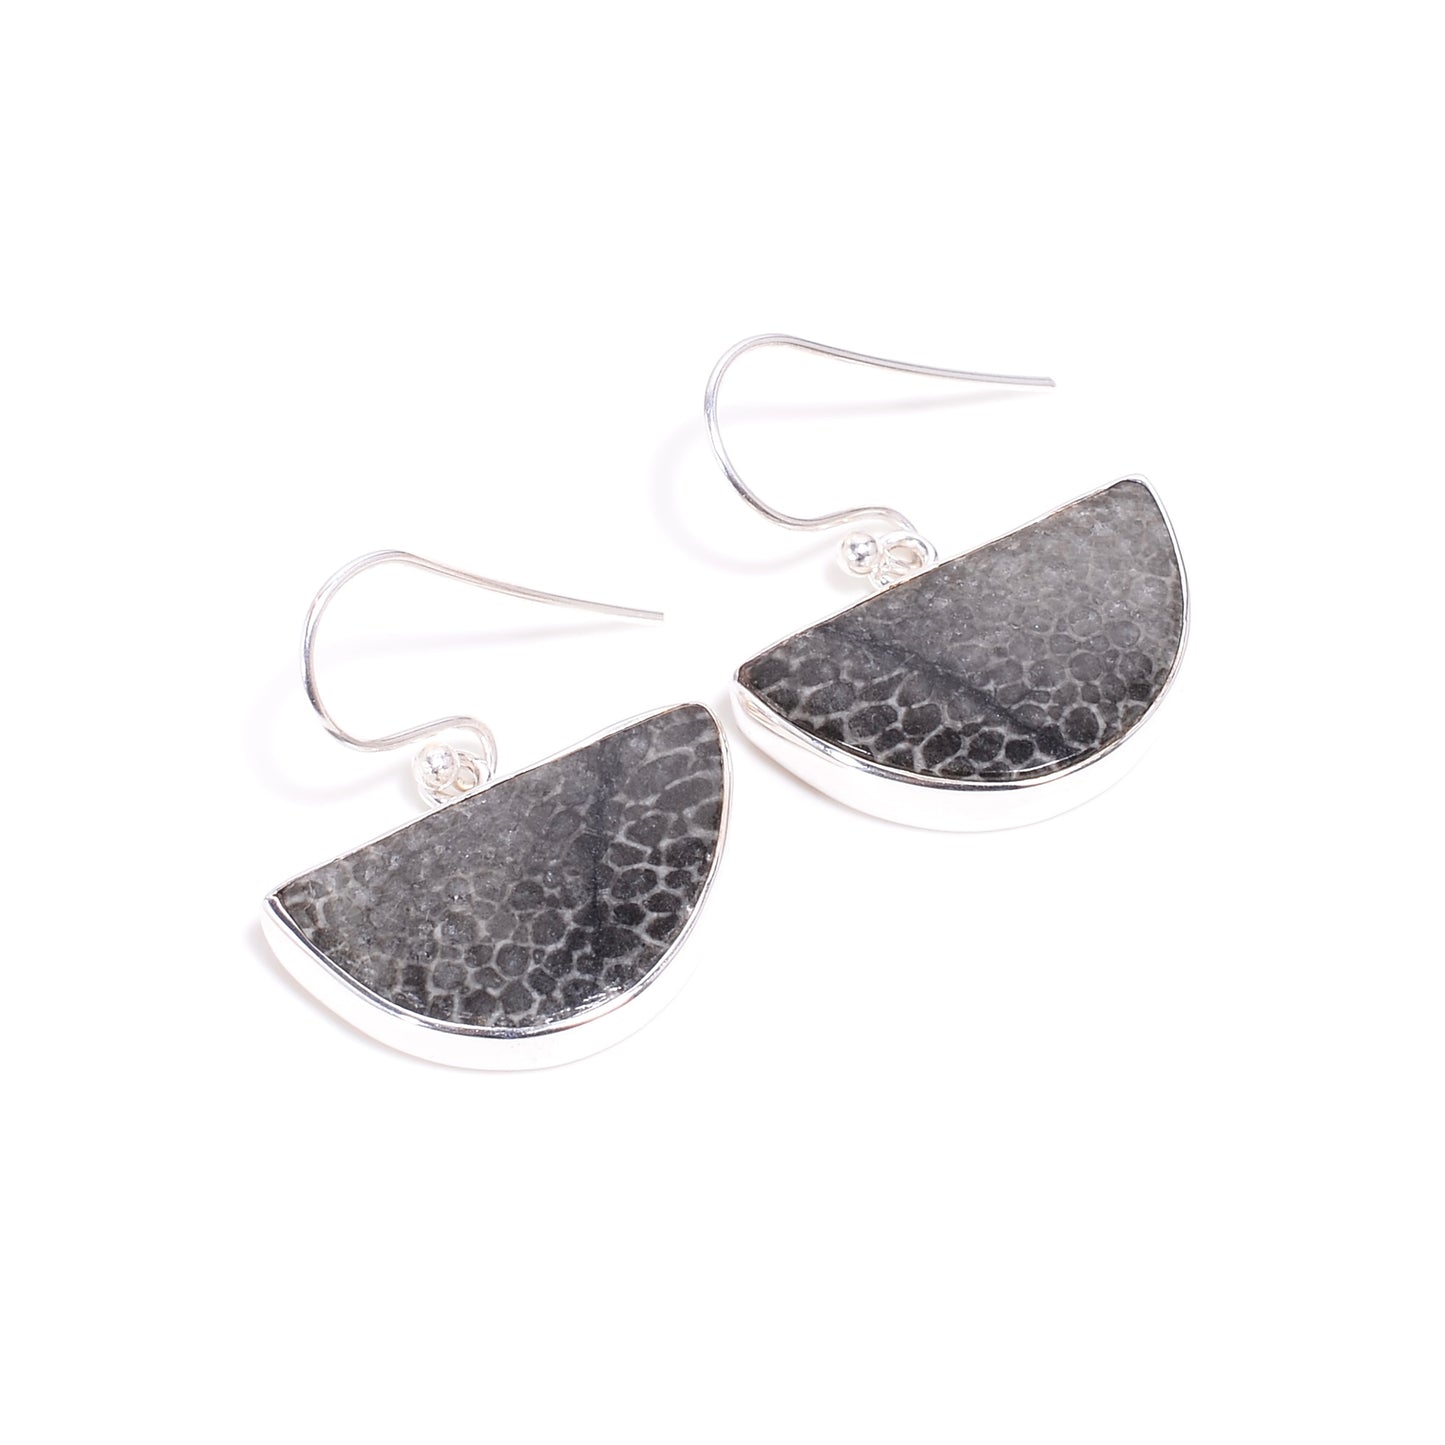 Black Coral Earrings Sterling Silver 925